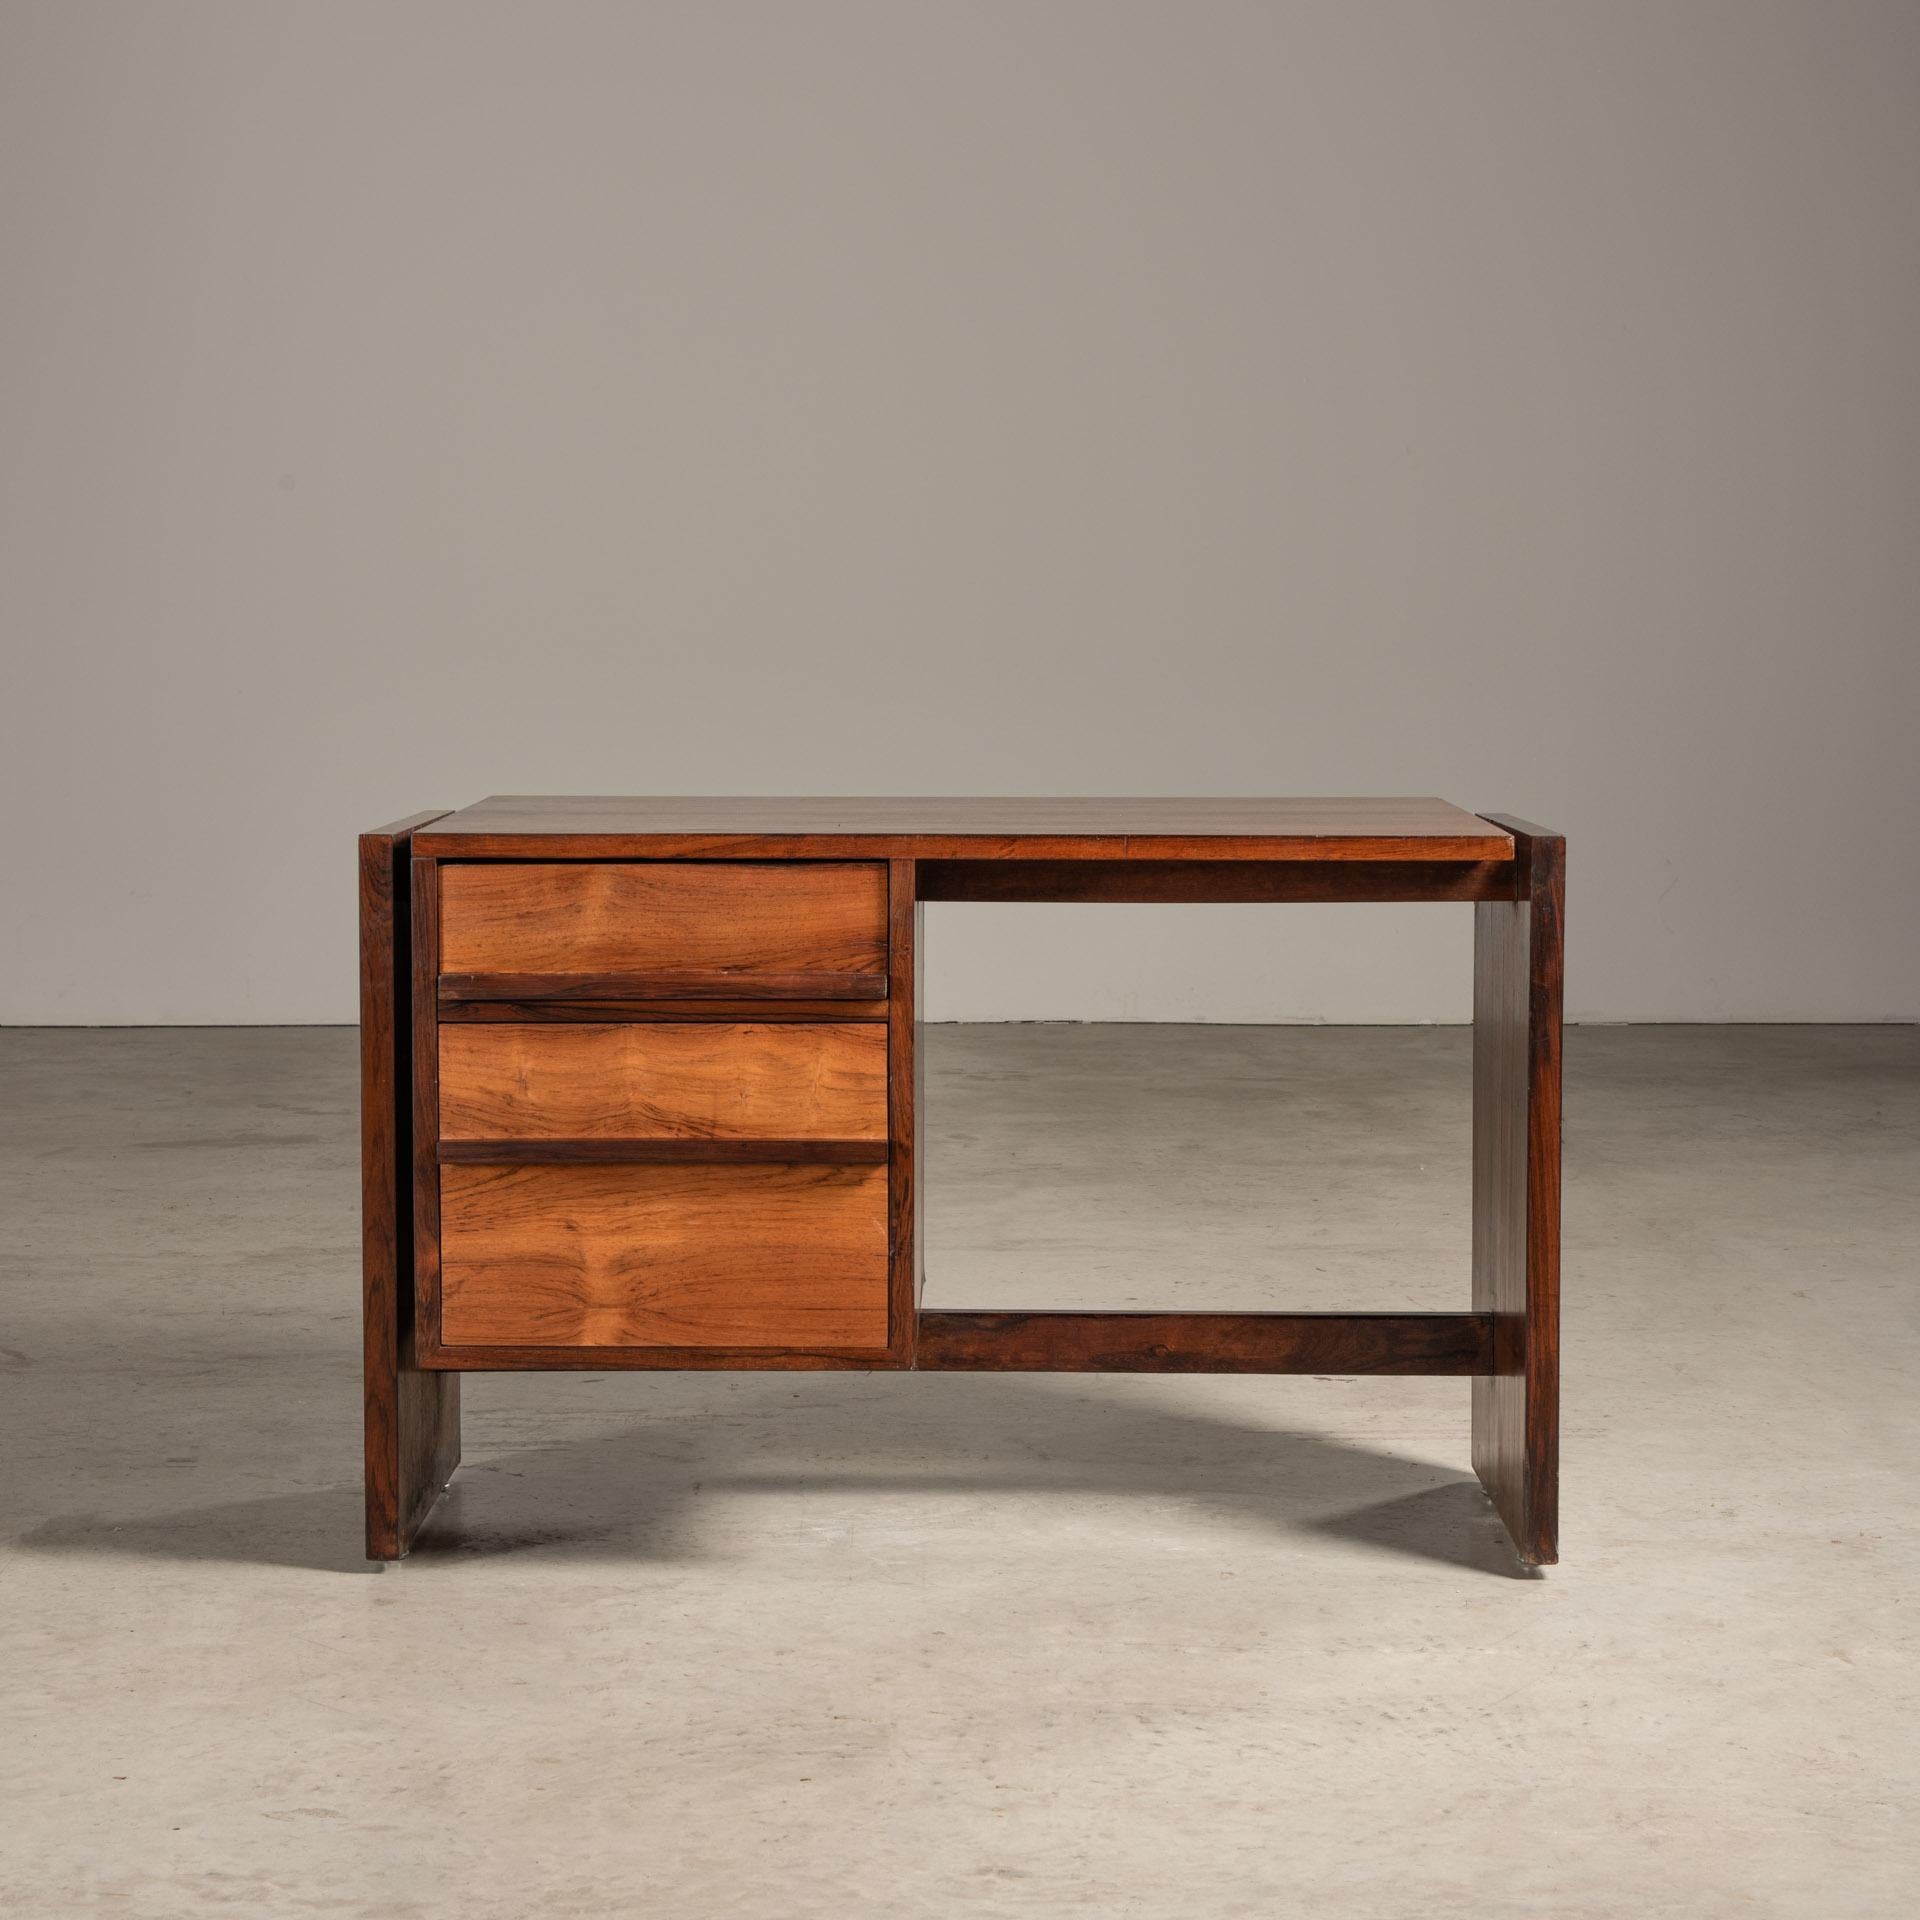 Dieser Schreibtisch von Joaquim Tenreiro ist ein Paragon des brasilianischen Modernismus der Mitte des Jahrhunderts. Er zeichnet sich durch seine schlanke Geometrie, seine anmutigen Proportionen und die nahtlose Verbindung von altehrwürdigen